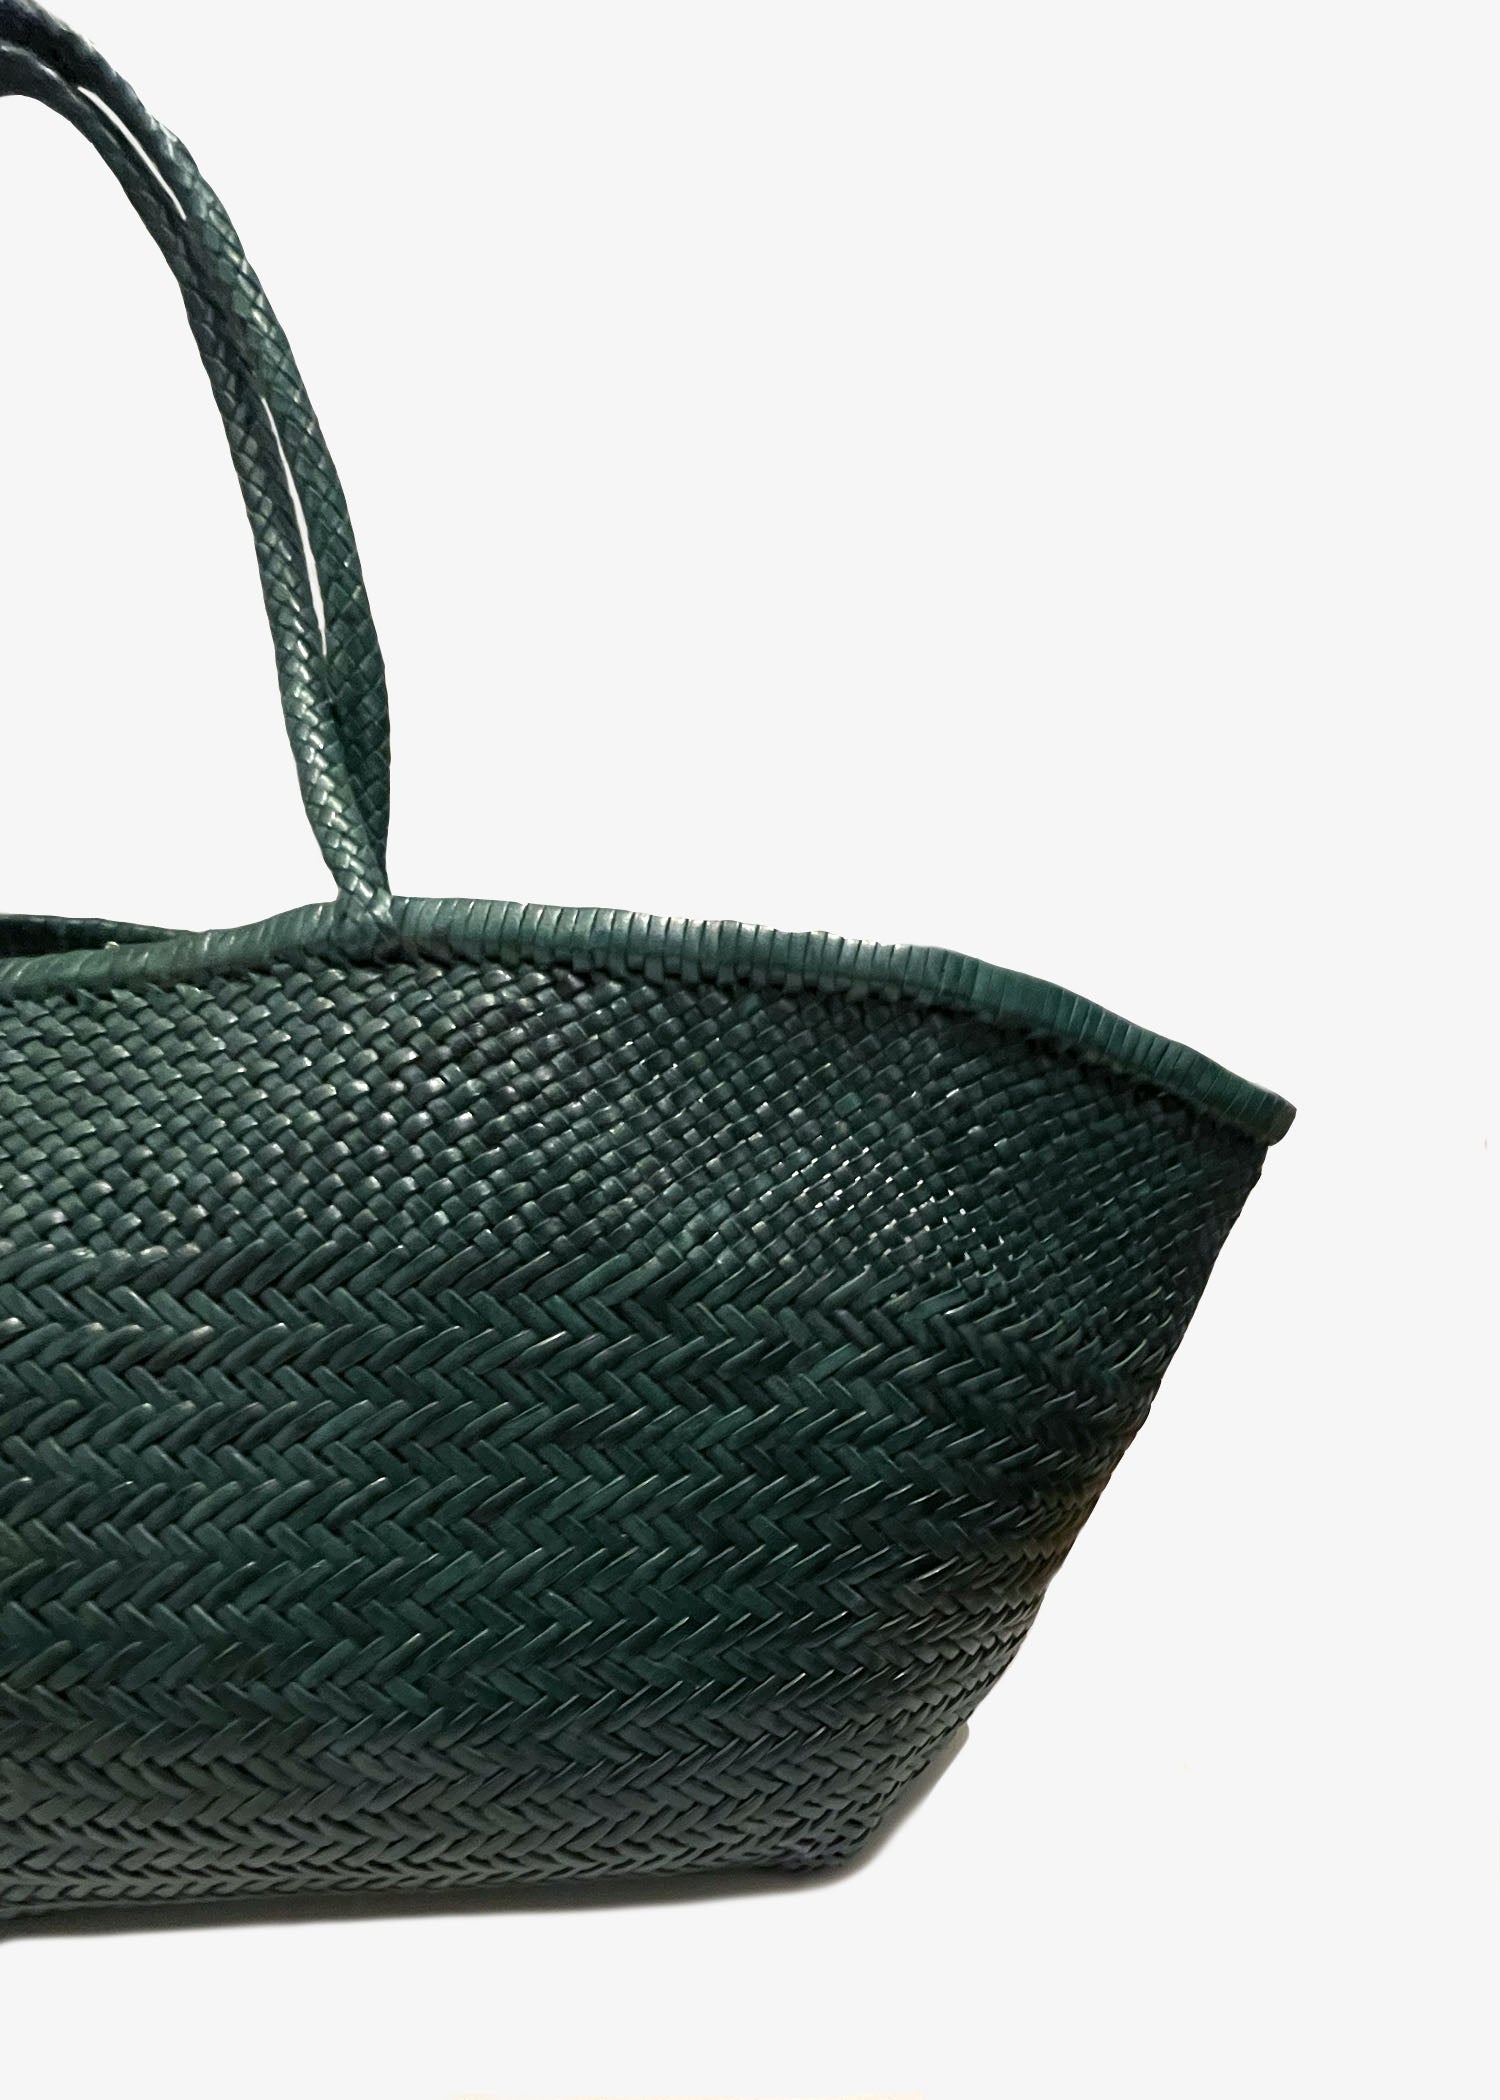 Dragon-Diffusion-Arcot-Basket-bag